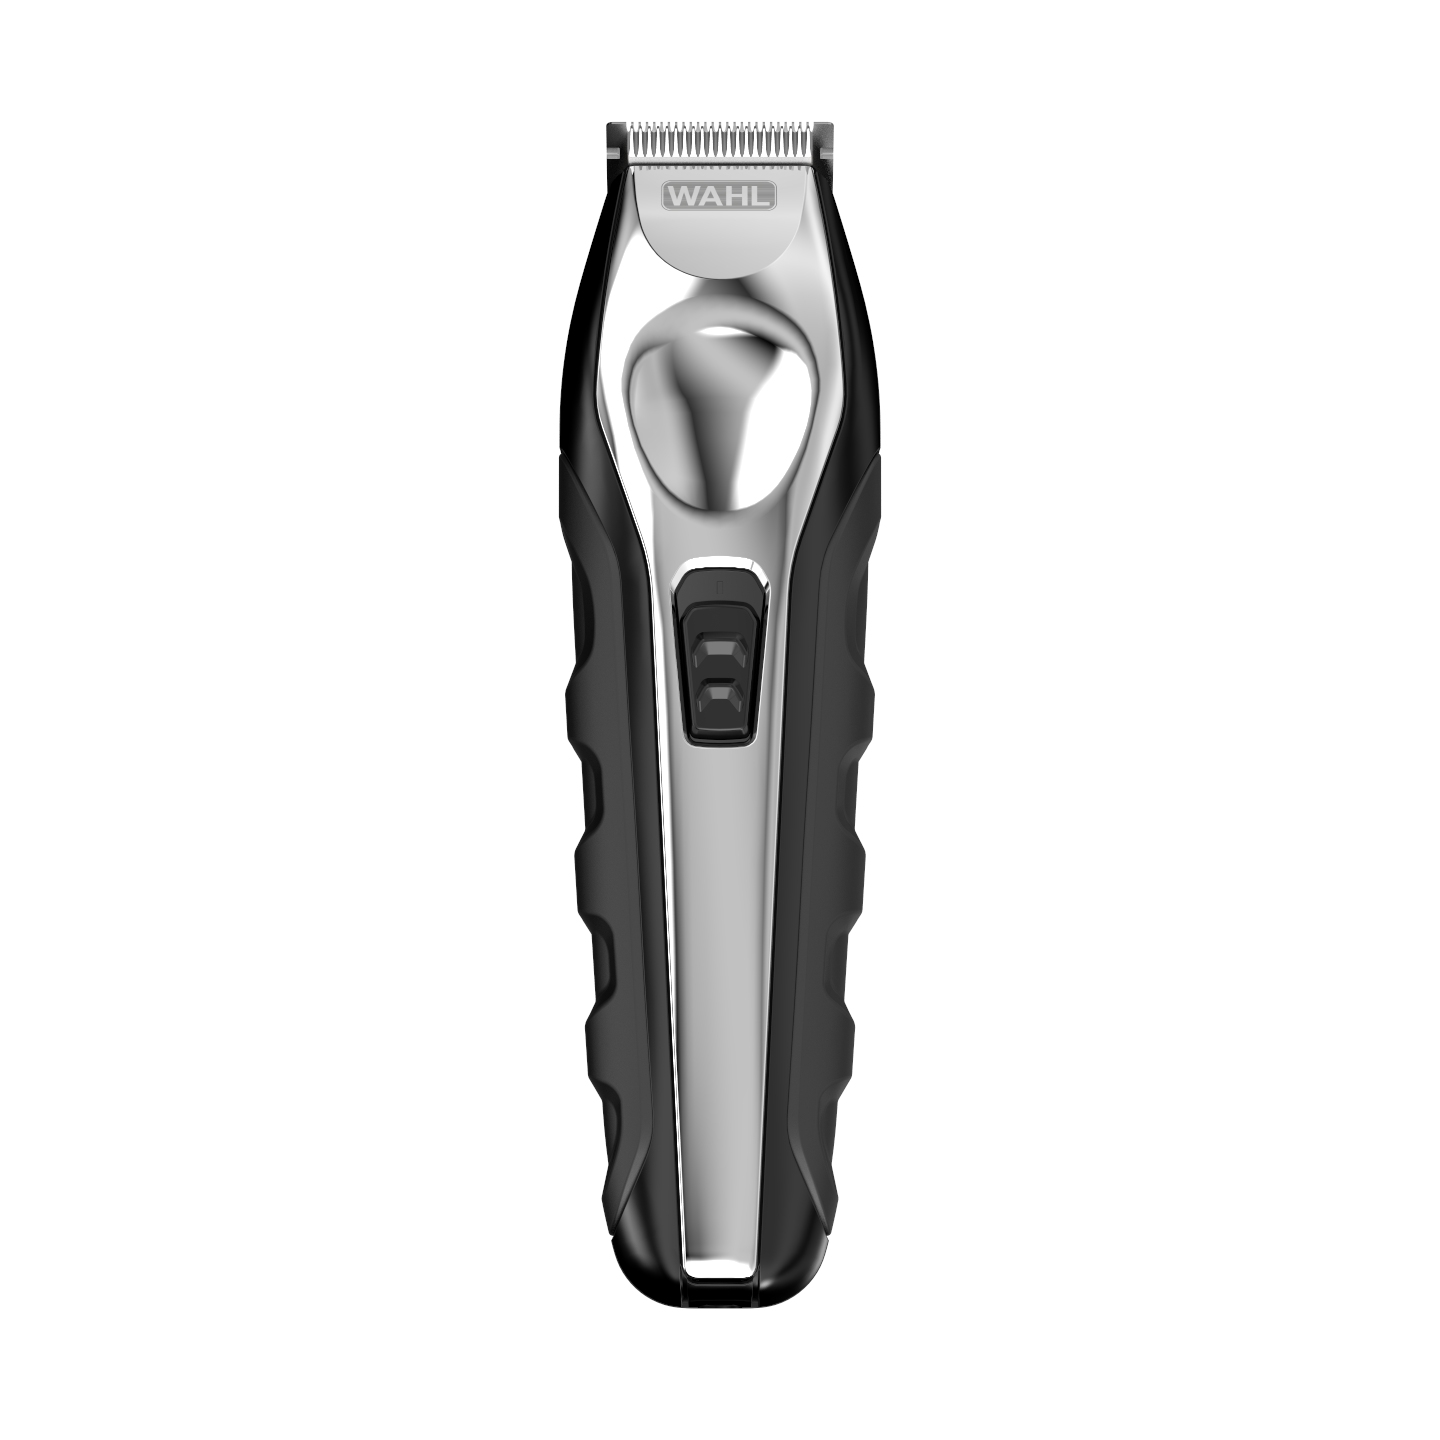 men's grooming trimmer kit